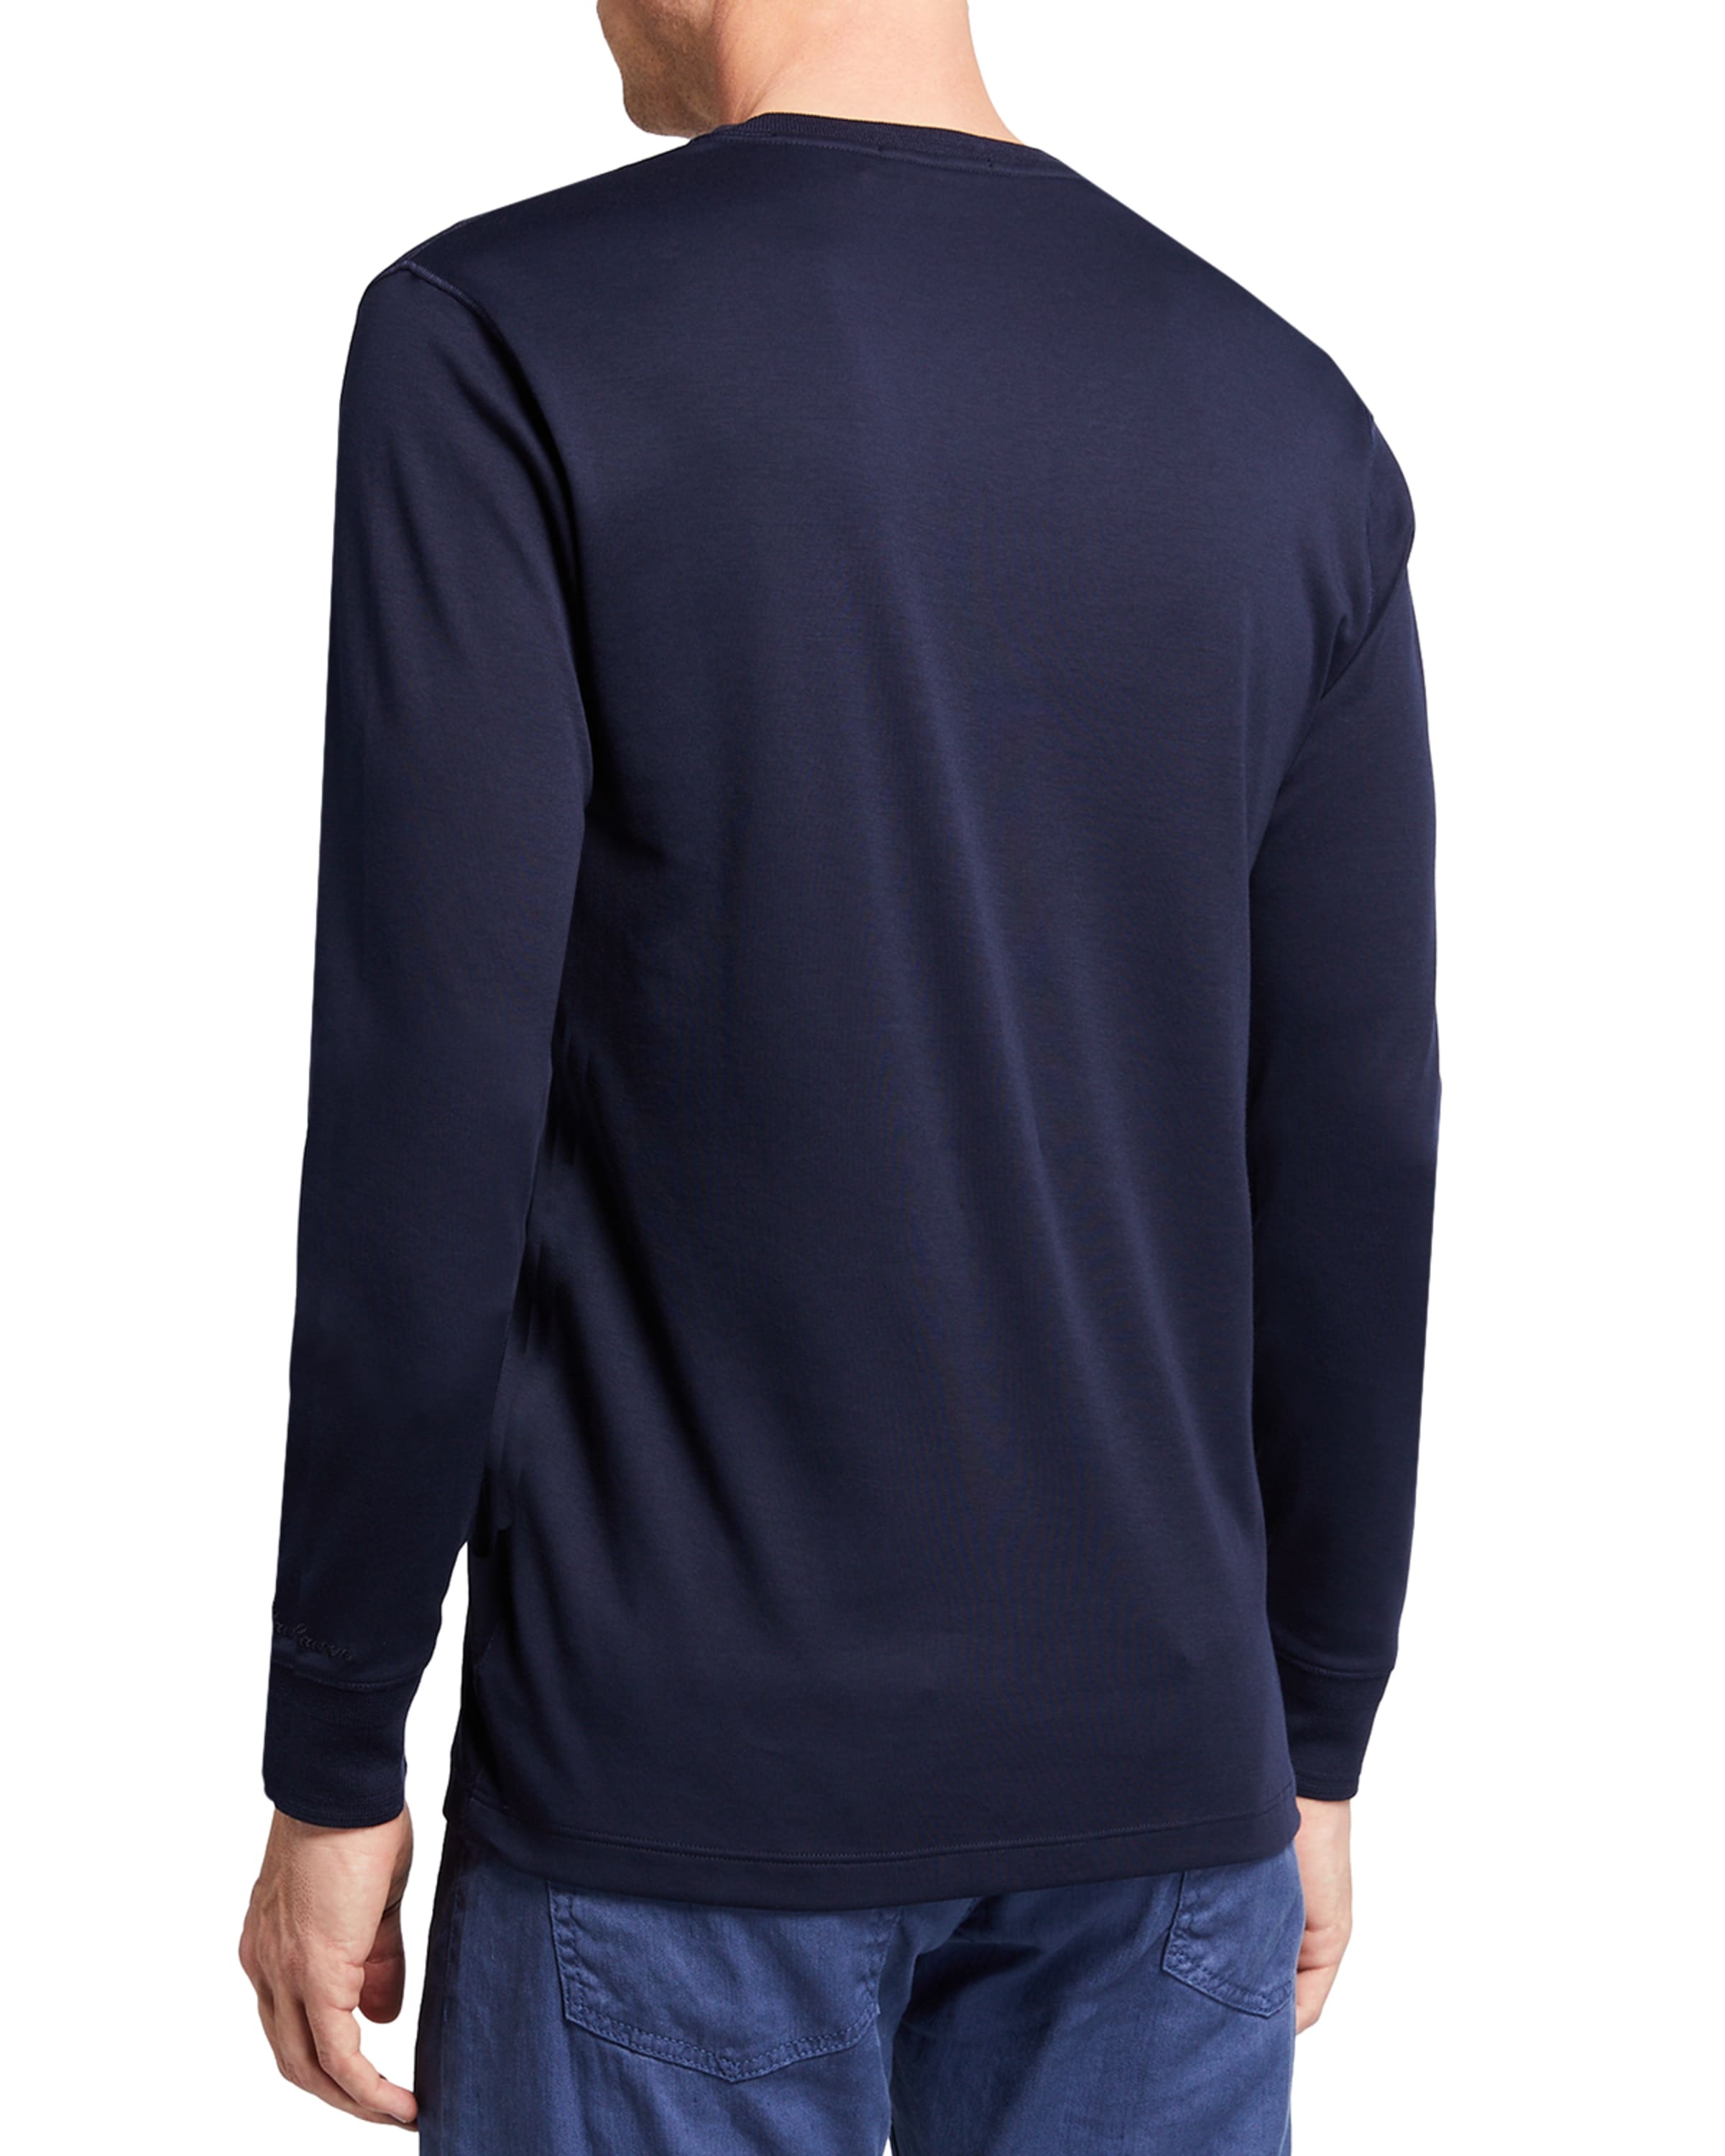 Men's Long-Sleeve Henley Shirt - 1